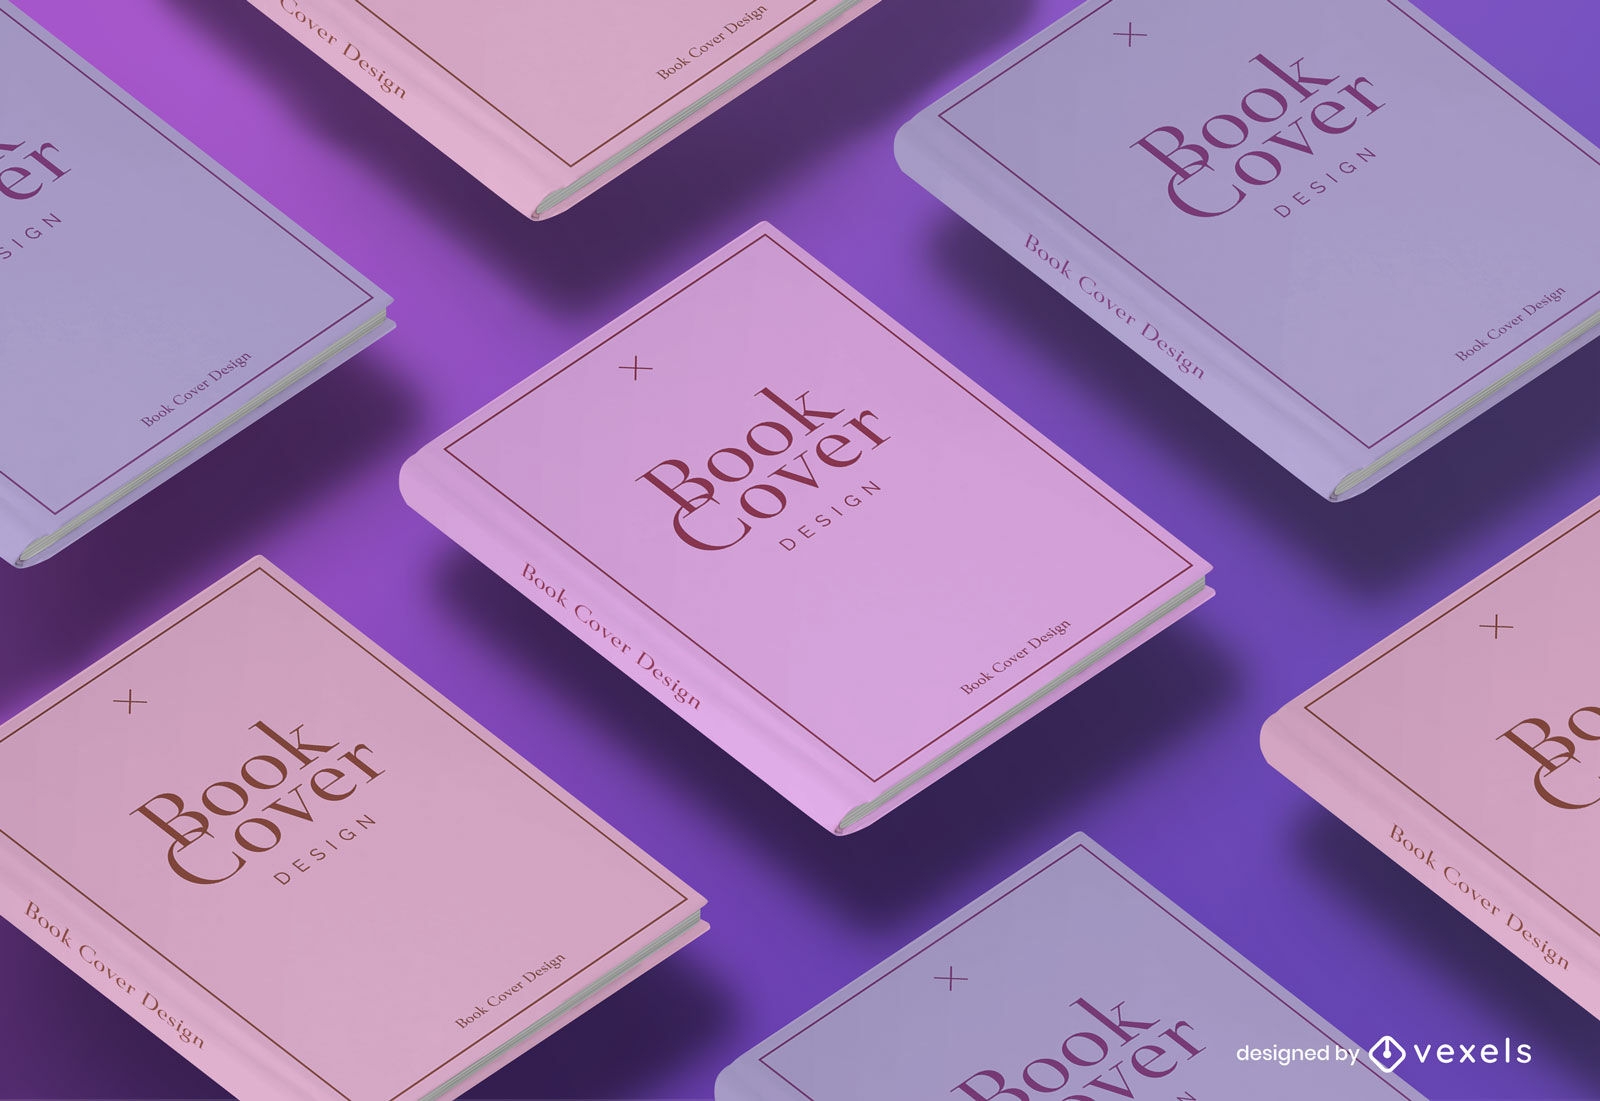 Design de maquete de capas de livro rosa e lil?s